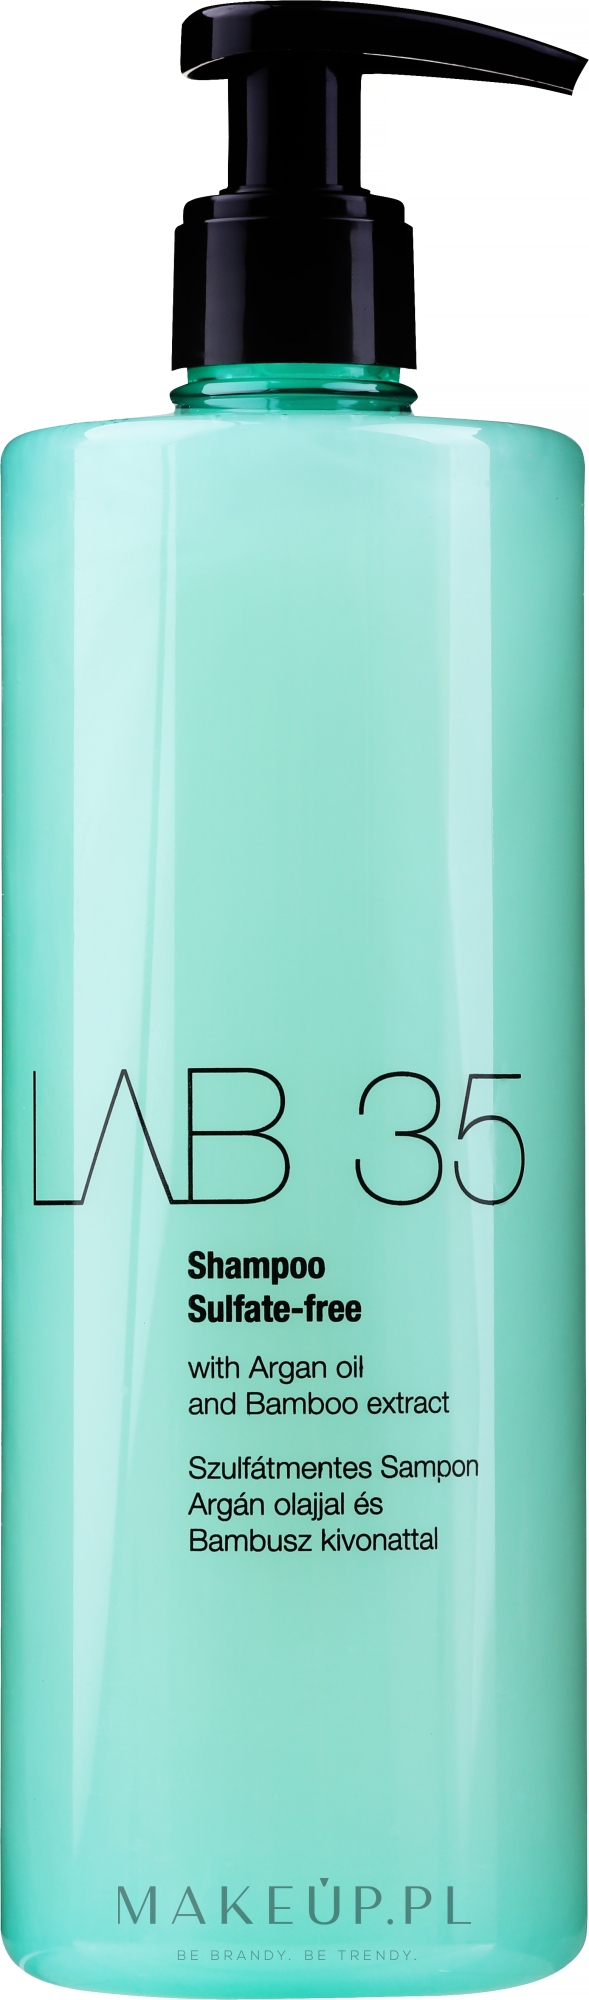 szampon lab 35 do wlosow farbowanych